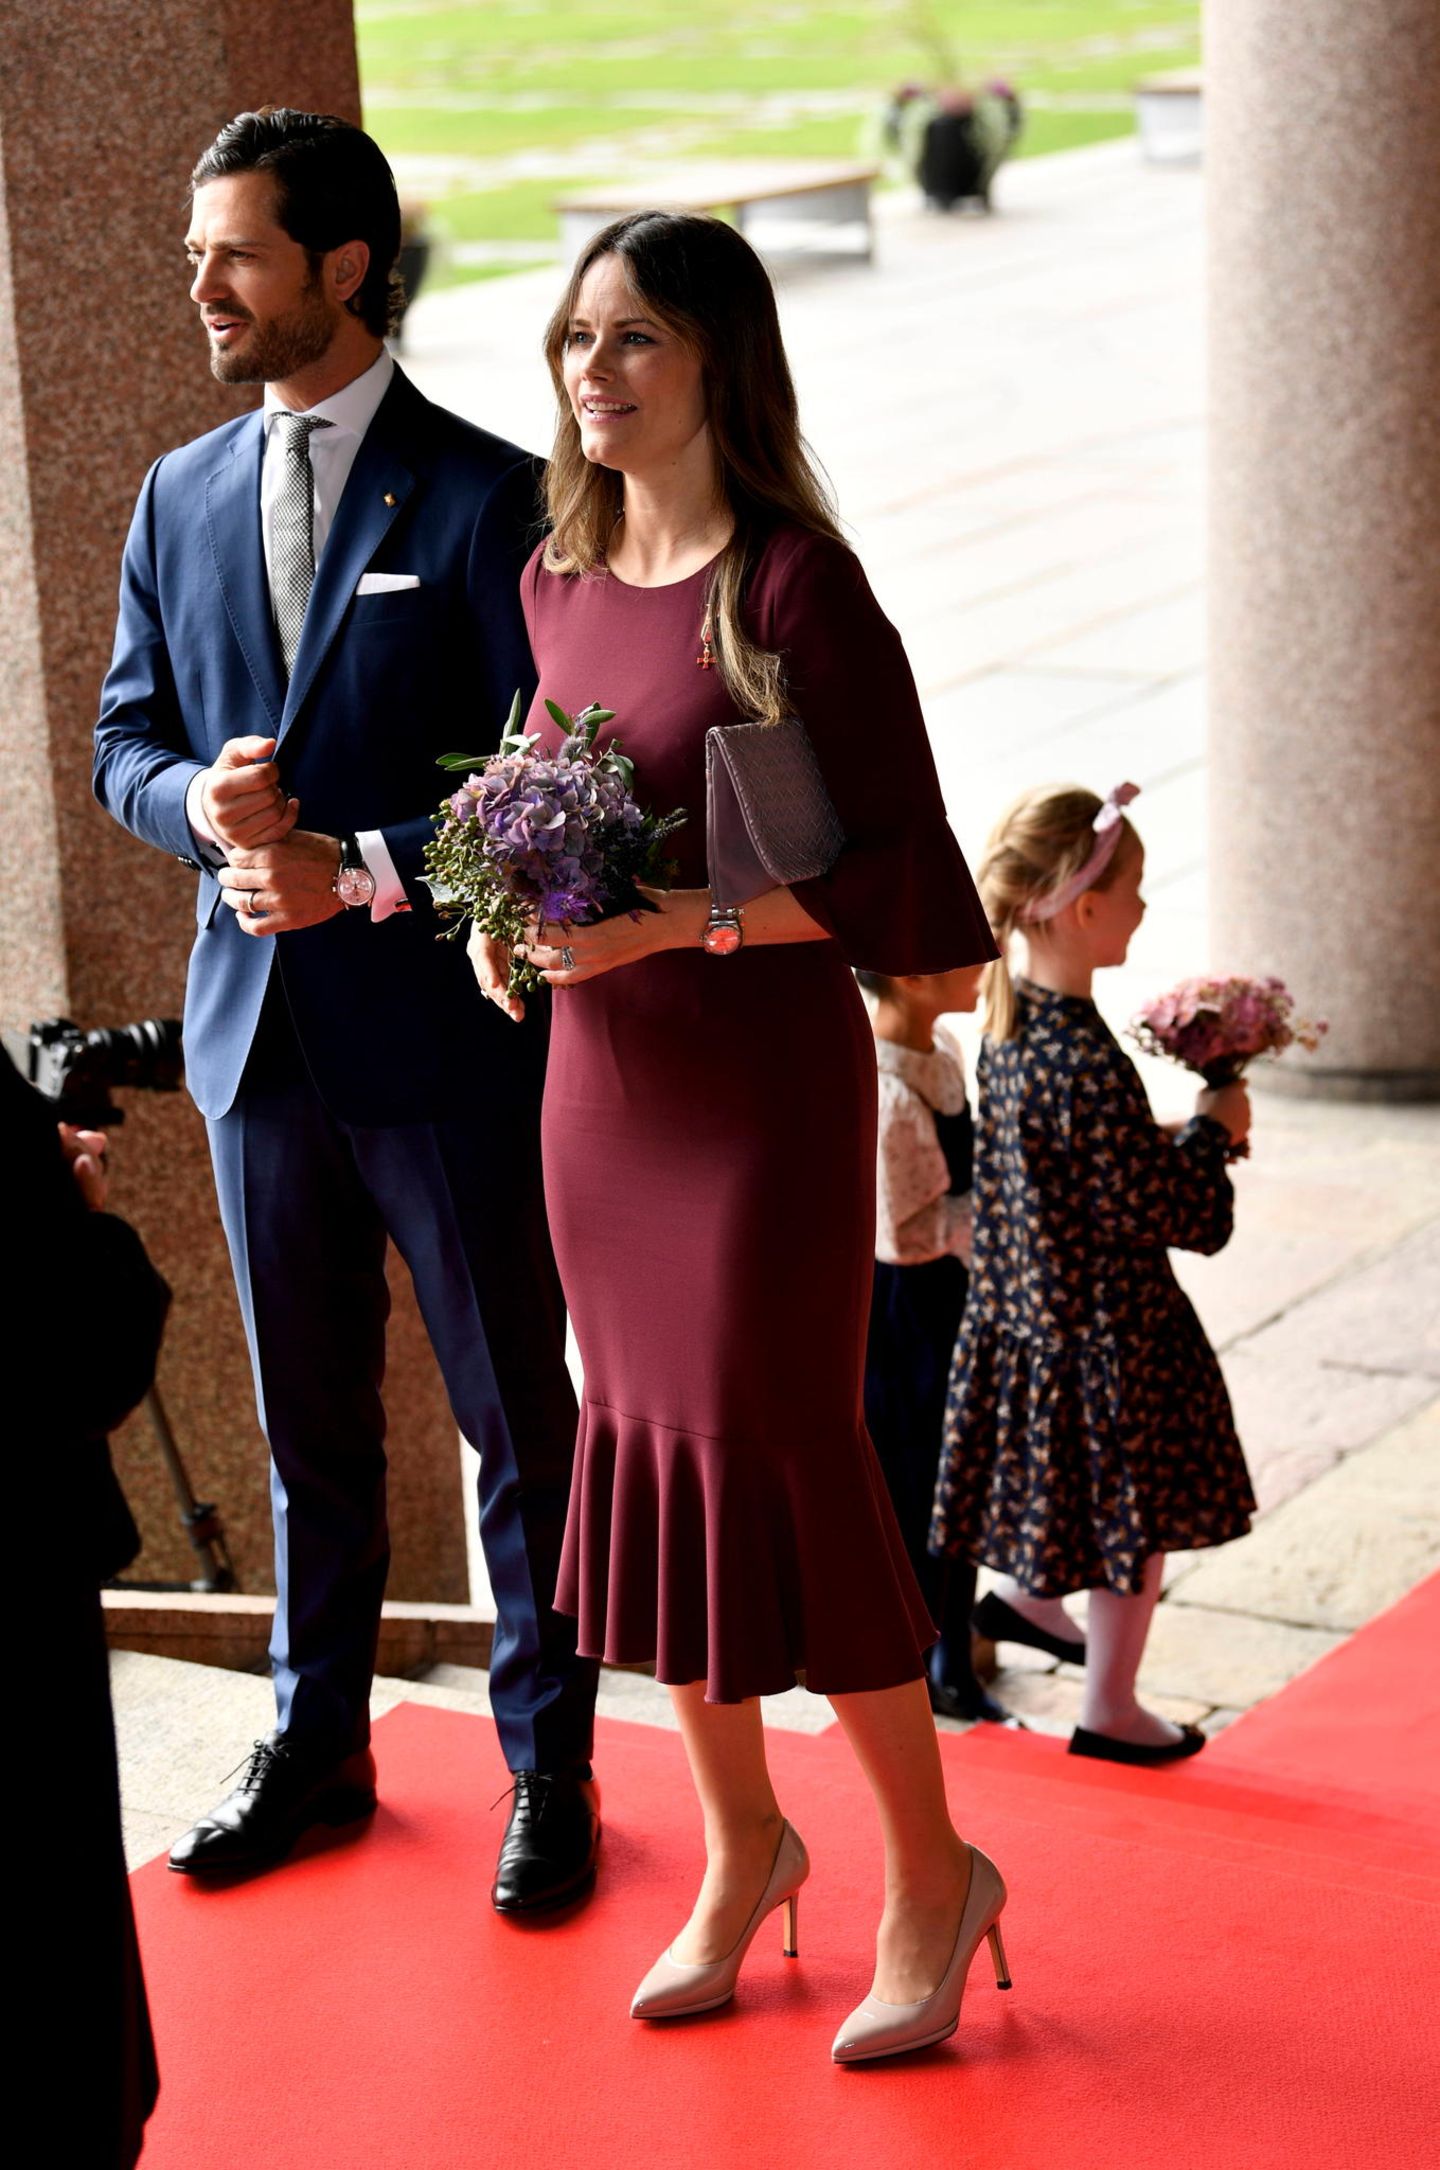 Zum Empfang des Bundespräsidenten haben sich Prinz Carl Philip und Prinzessin Sofia in Schale geworfen. Die Dreifach-Mutter strahlt in einem beerenfarbenen Kleid des Labels Andiata. Sie freut sich wohl darüber, dass sie jetzt, fünf Monate nach der Geburt von Prinz Julian, endlich wieder zu figurbetonten Schnitten greifen kann. Und was sollen wir sagen: Sofia sieht einfach fantastisch aus! 